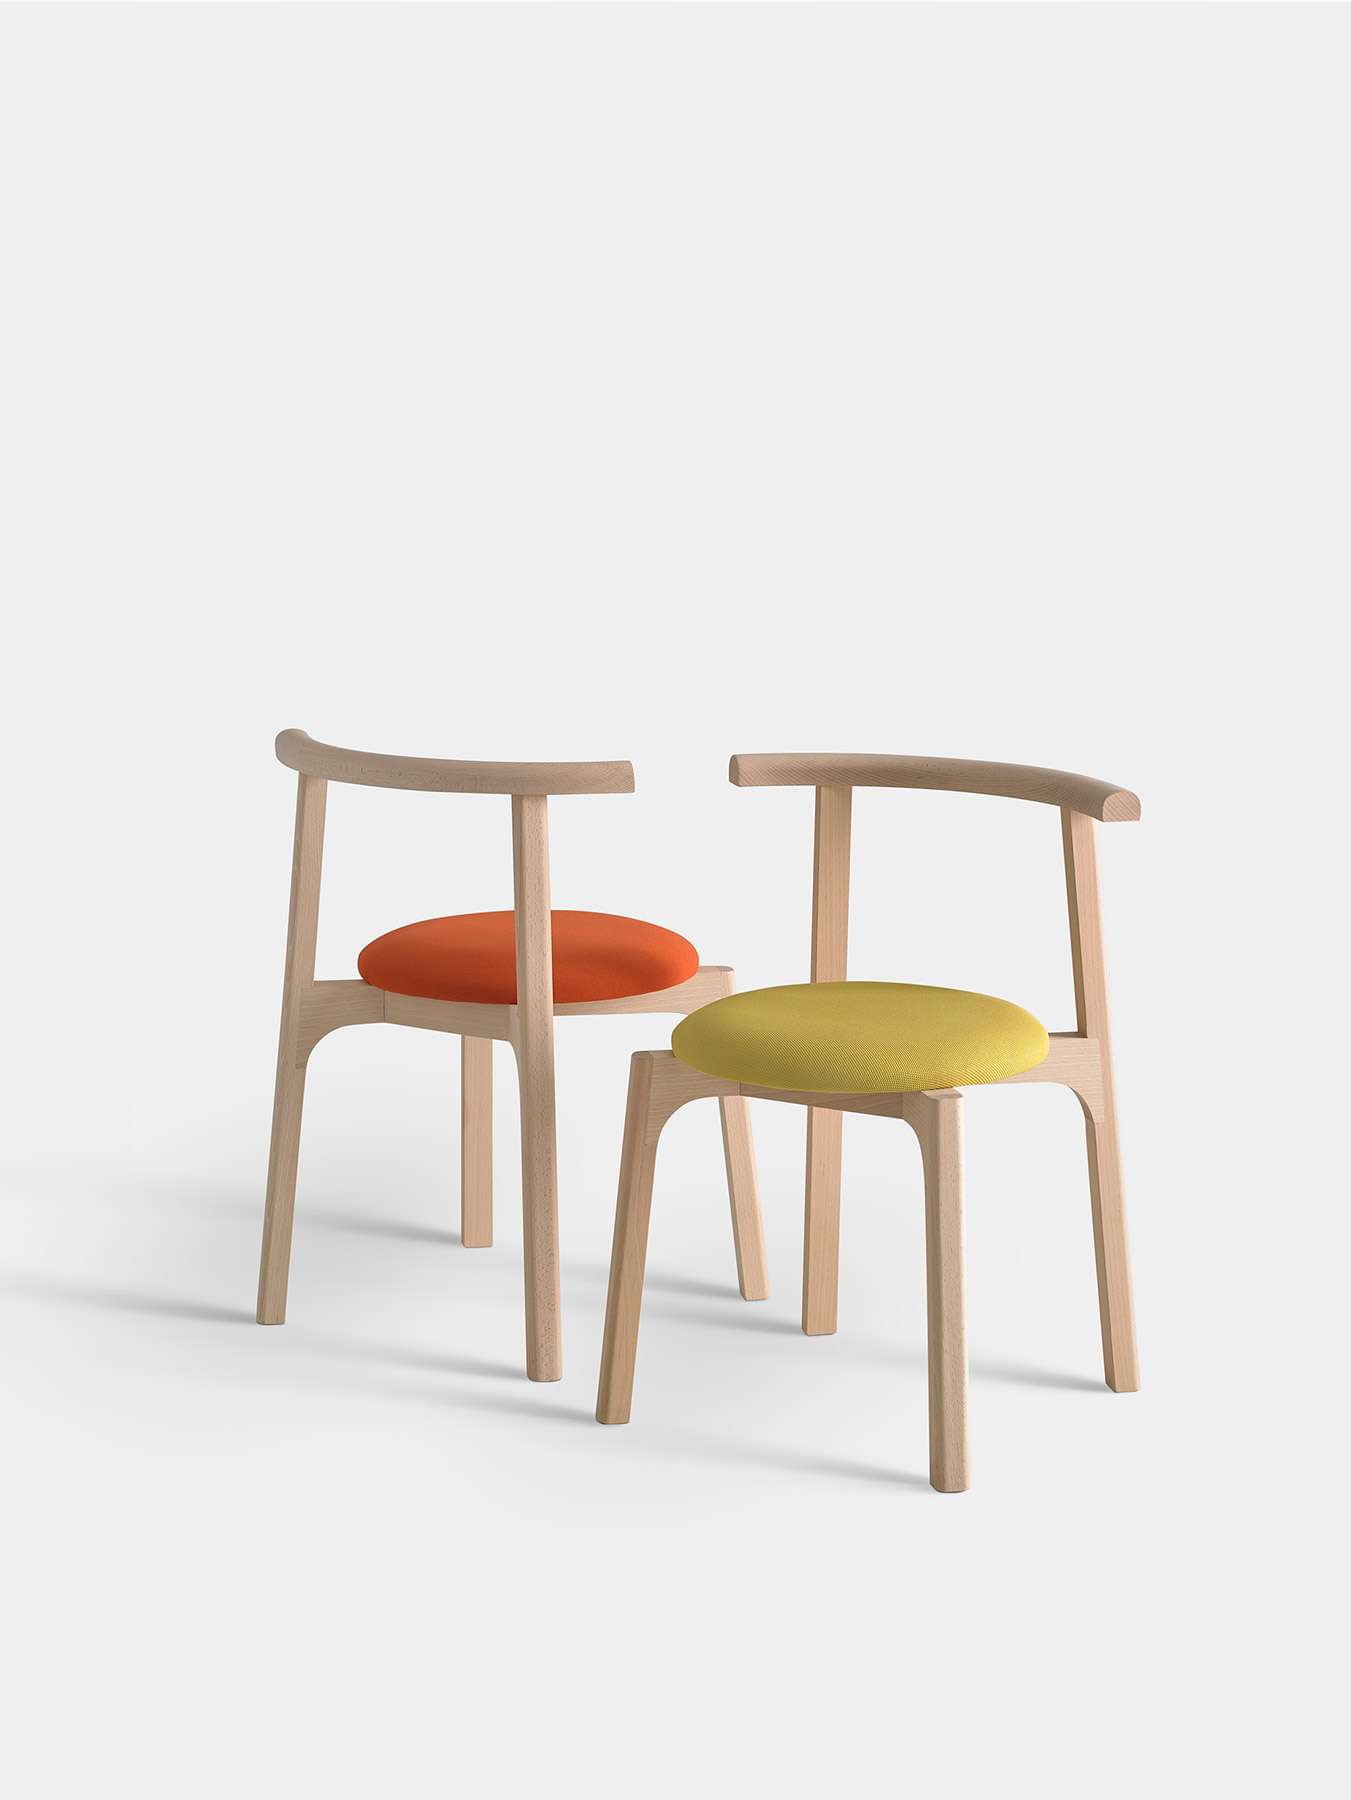 Carlo, una silla creada por Studioestudio para Missana, en la que las líneas que la definen dialogan en perfecta armonía produciendo una pieza robusta y sencilla